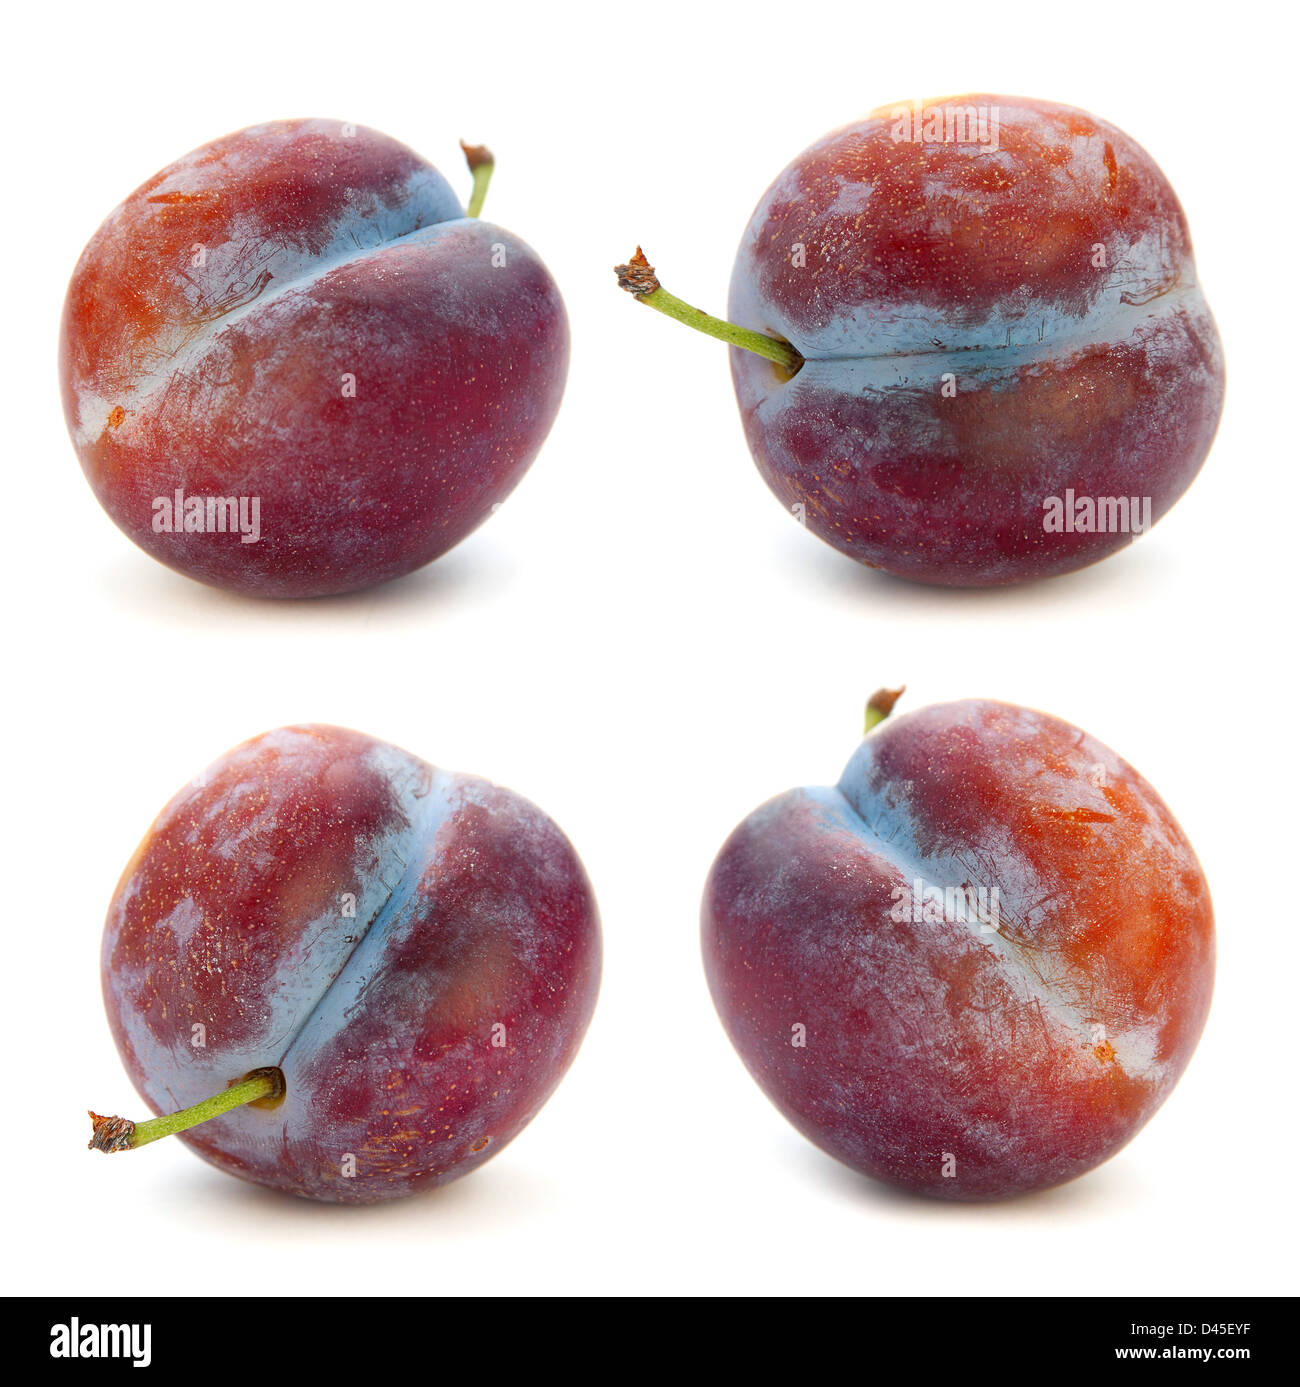 Plum fruit isolated on white background Stock Photo